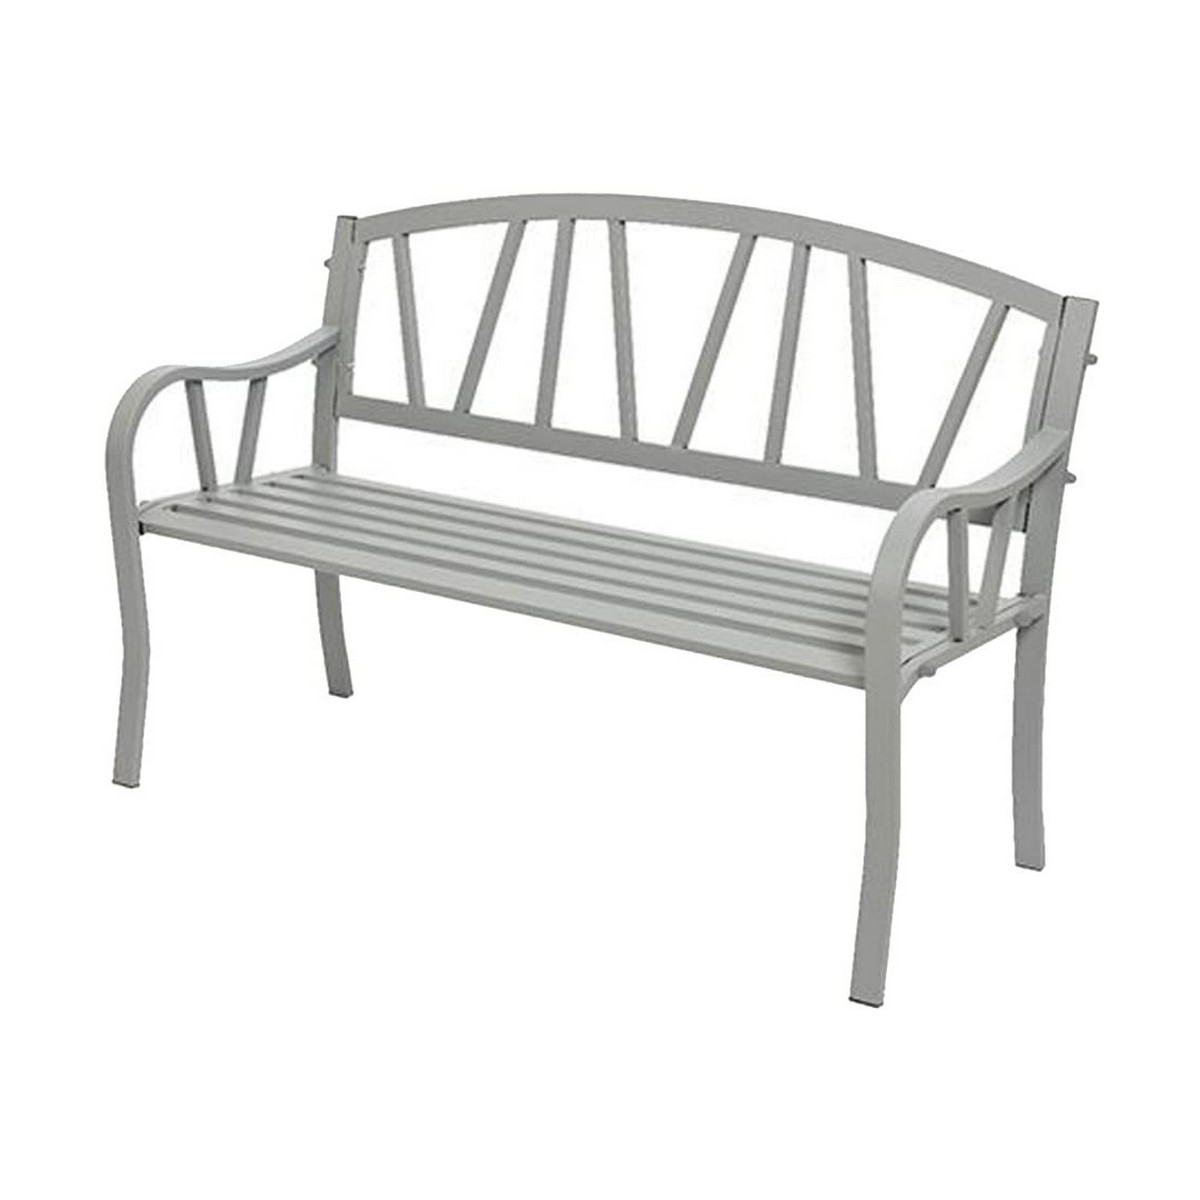 Bench with backrest Grey Iron (123 X 53 X 86 cm)